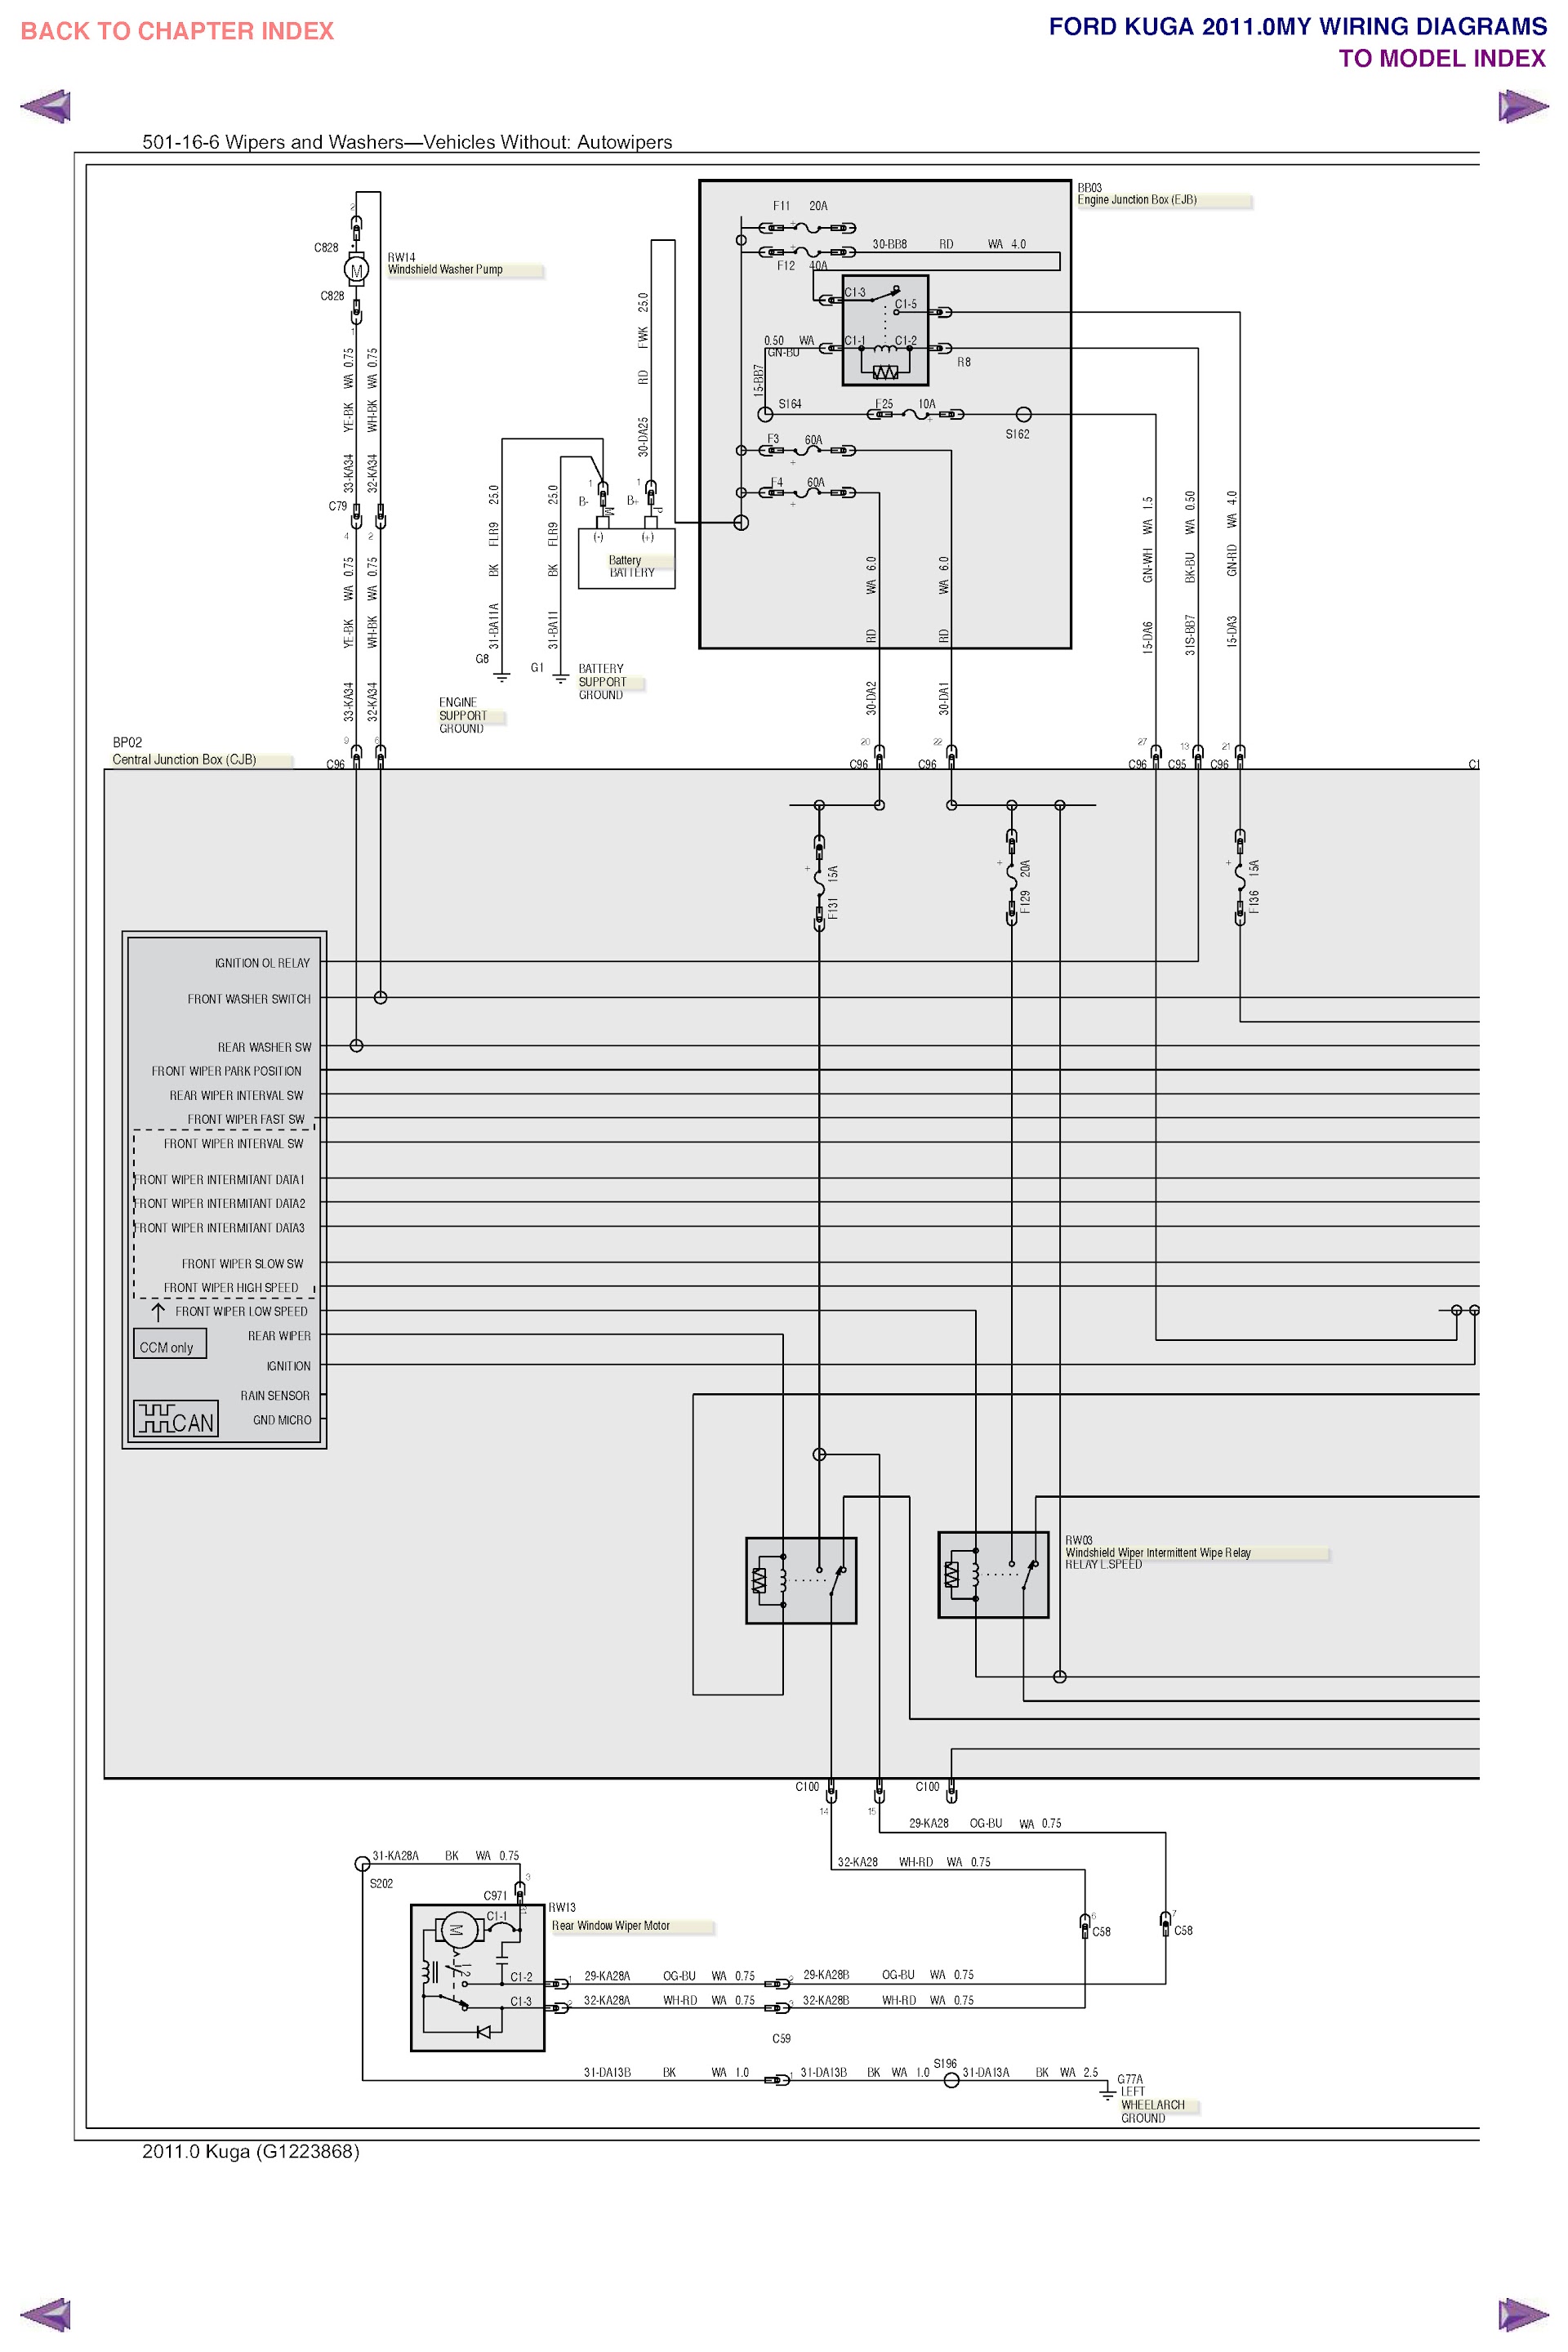 2014 Ford Kuga Repair Manual Wiring Diagram